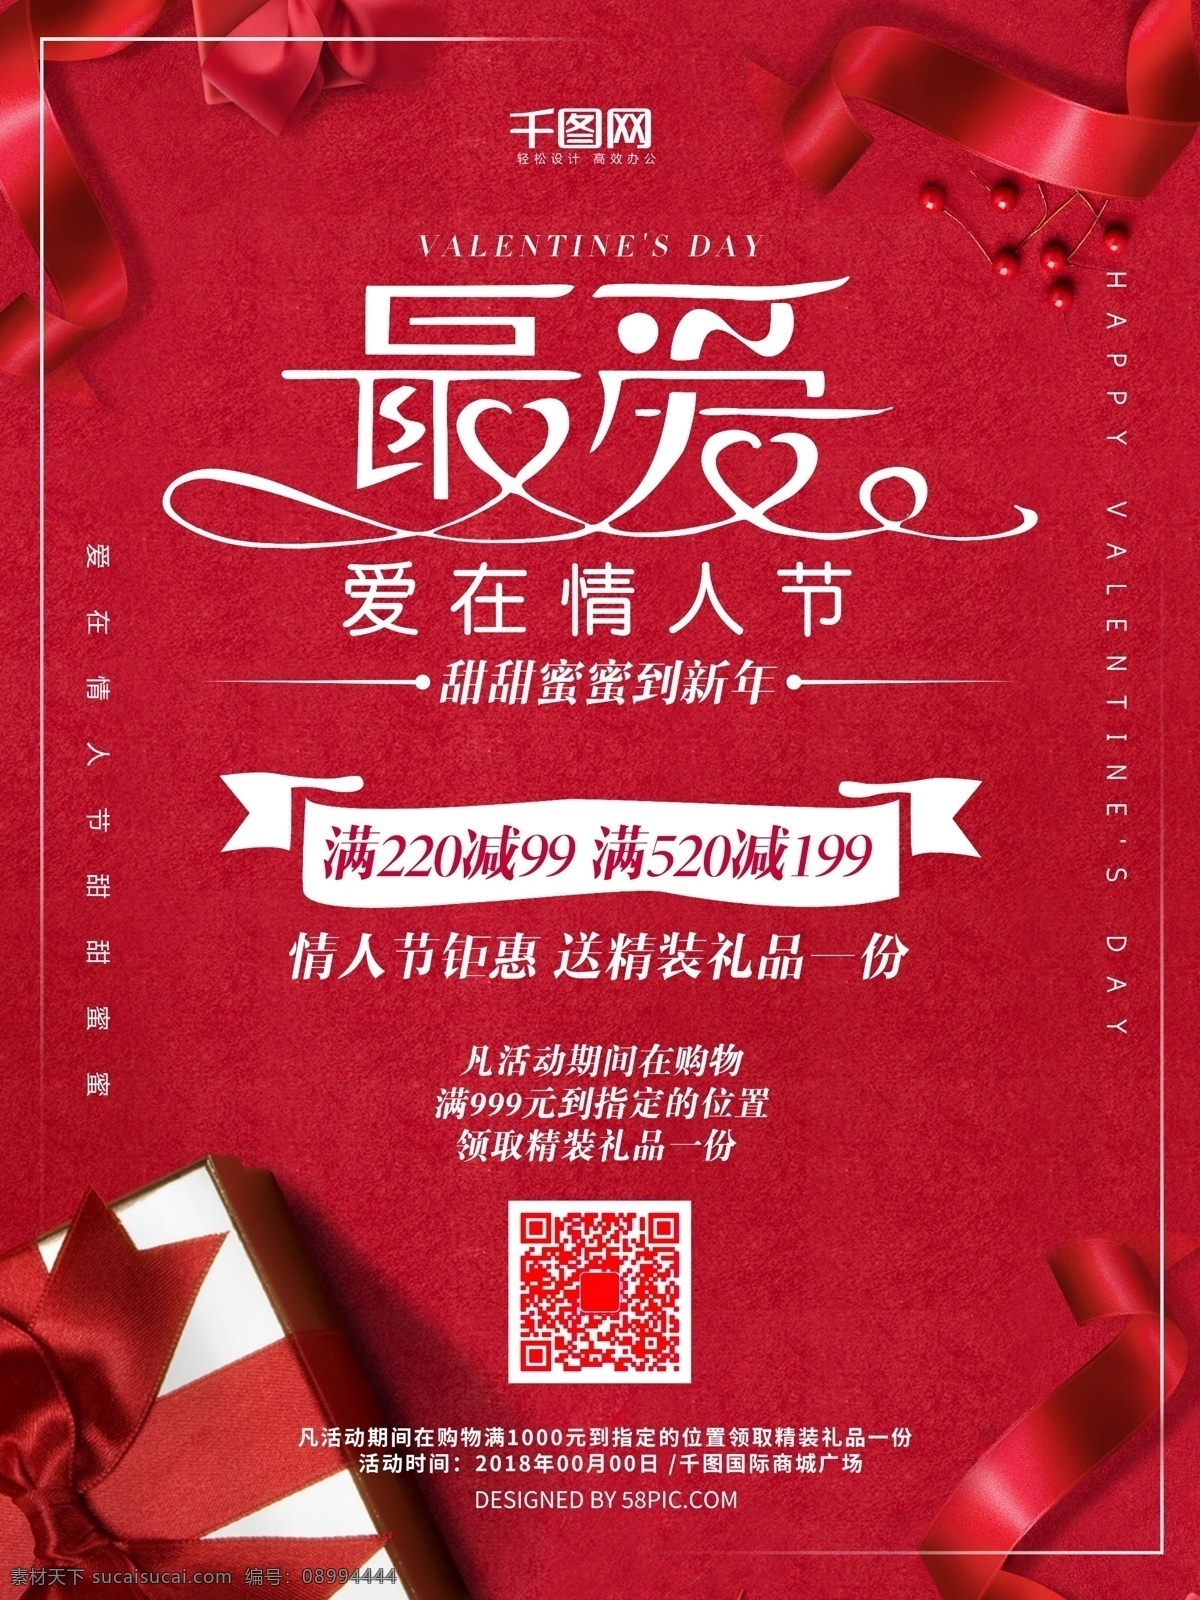 浪漫 红色 礼盒 情人节 促销 海报 爱在情人节 红色礼盒 最爱